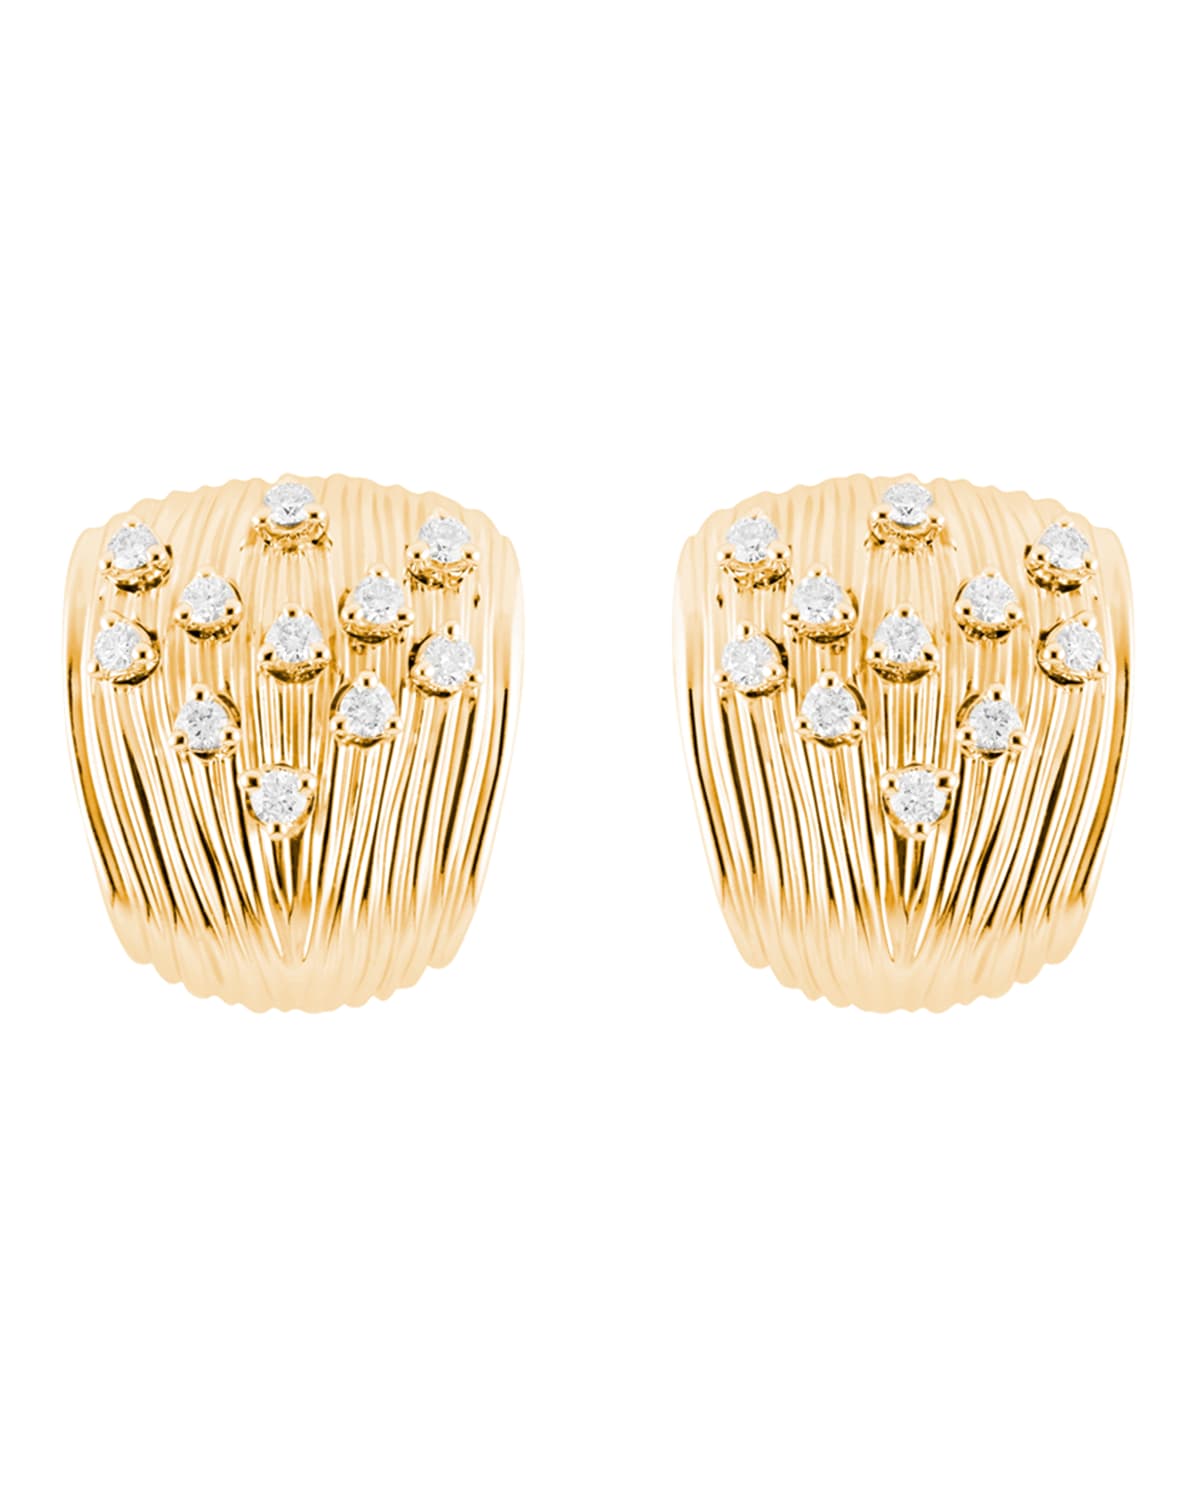 Hueb Bahia 18k Gold Scattered Diamond Earrings